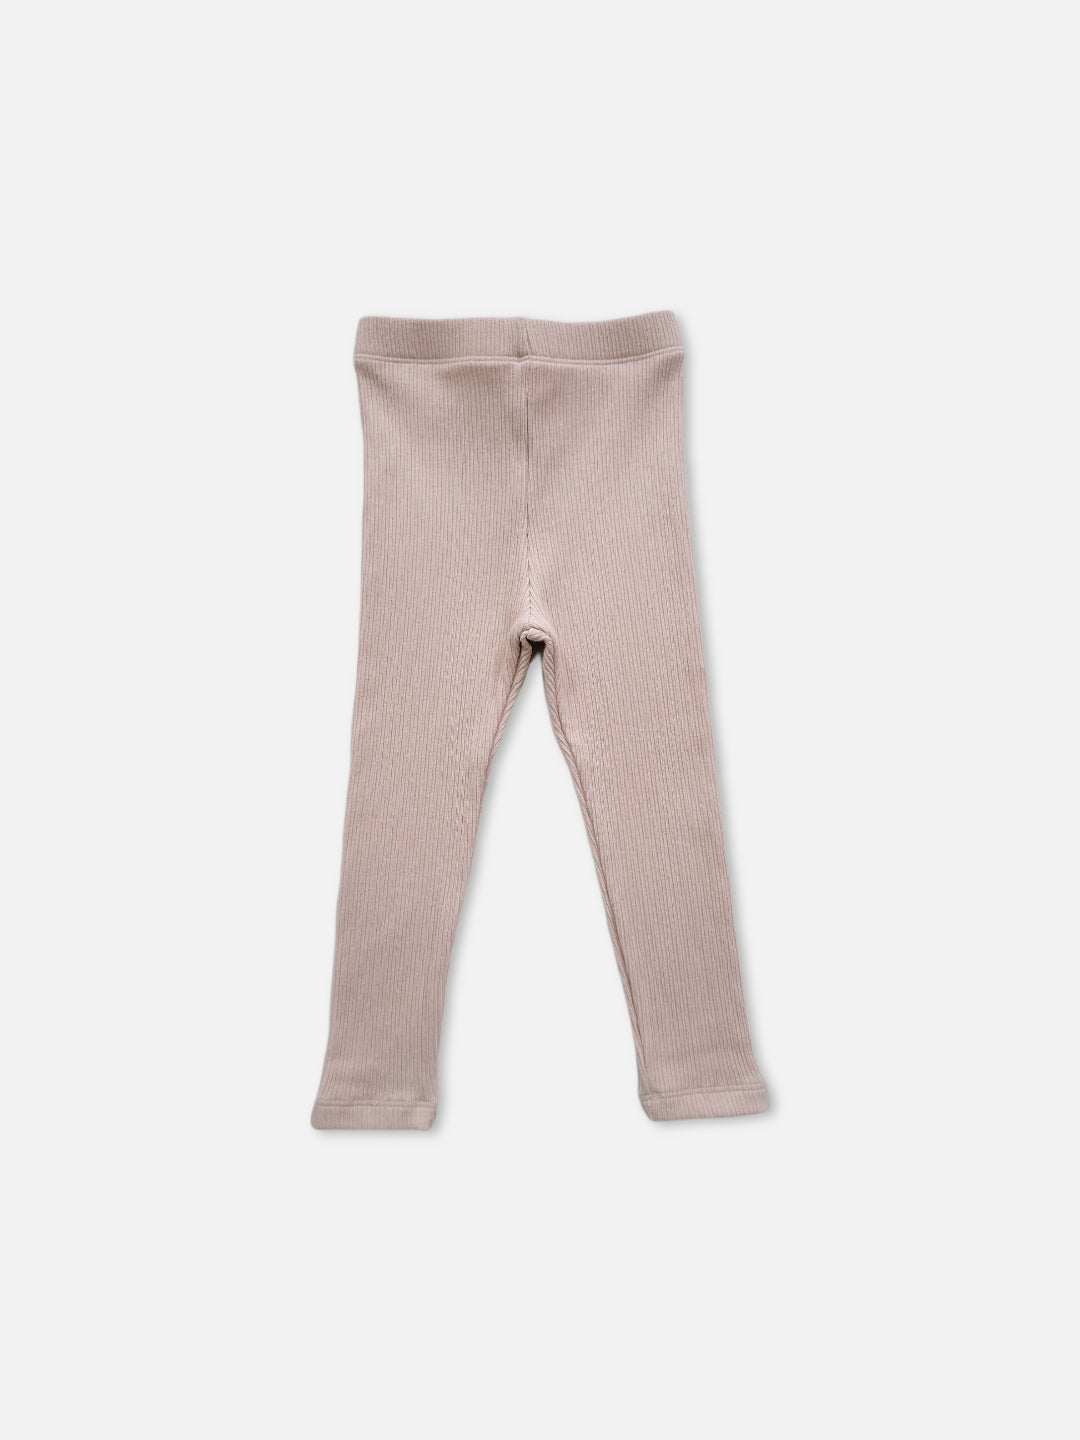 Mori leggings  |  Pale Pink